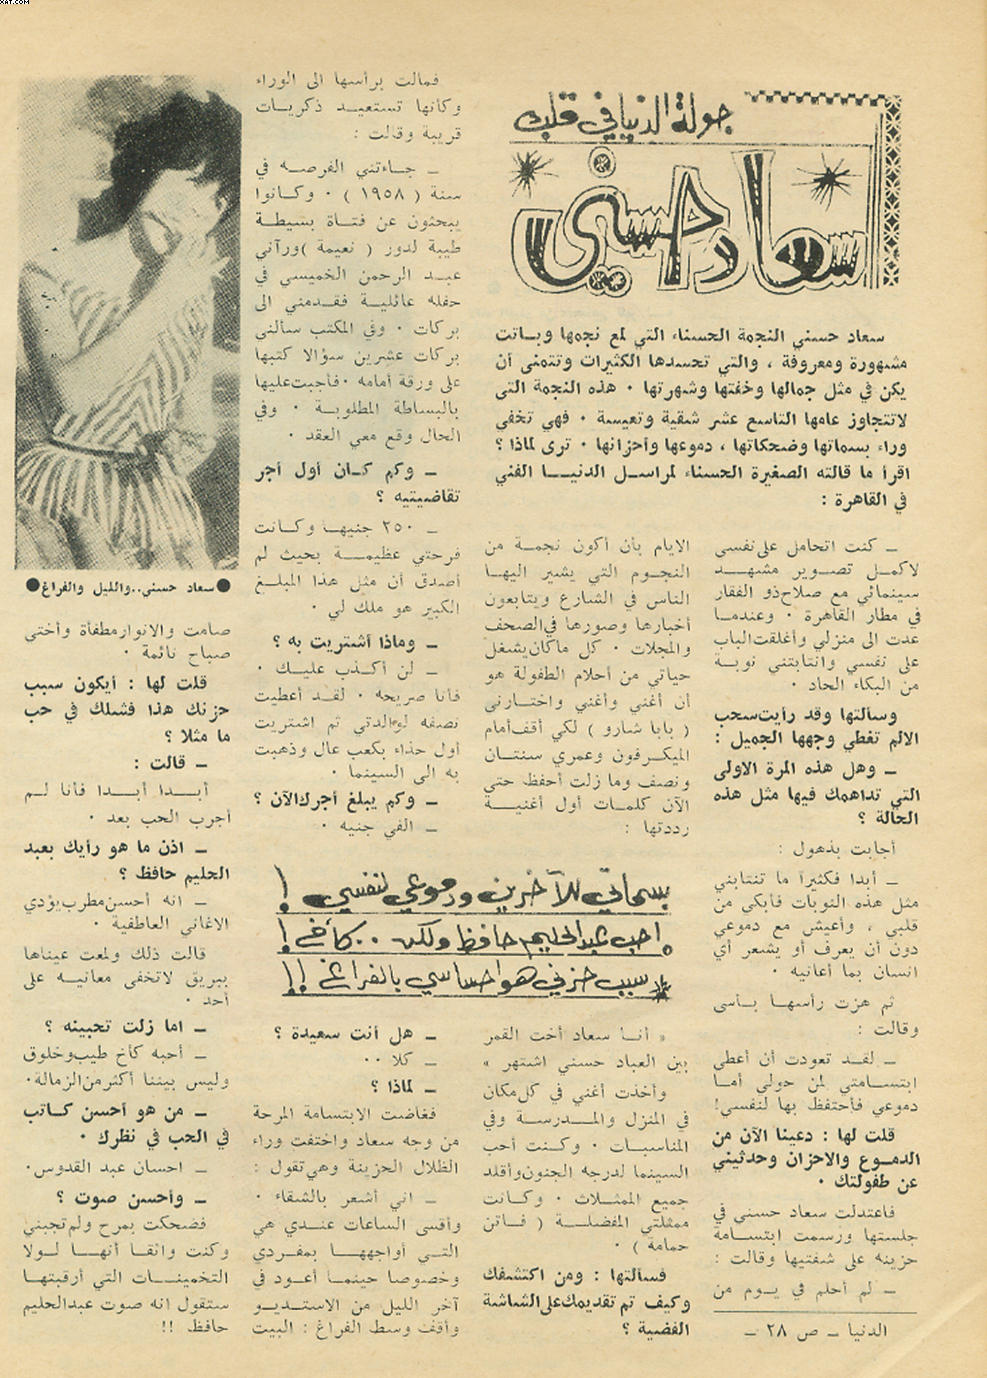 1963 - حوار صحفي : جولة الدنيا في قلب "سعاد حسني" 1963 م Yiao_a10